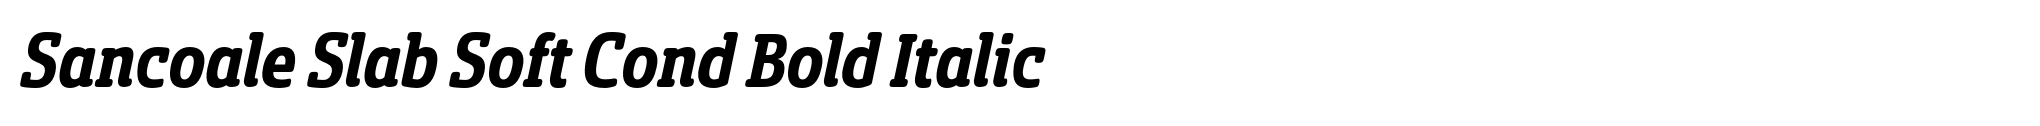 Sancoale Slab Soft Cond Bold Italic image